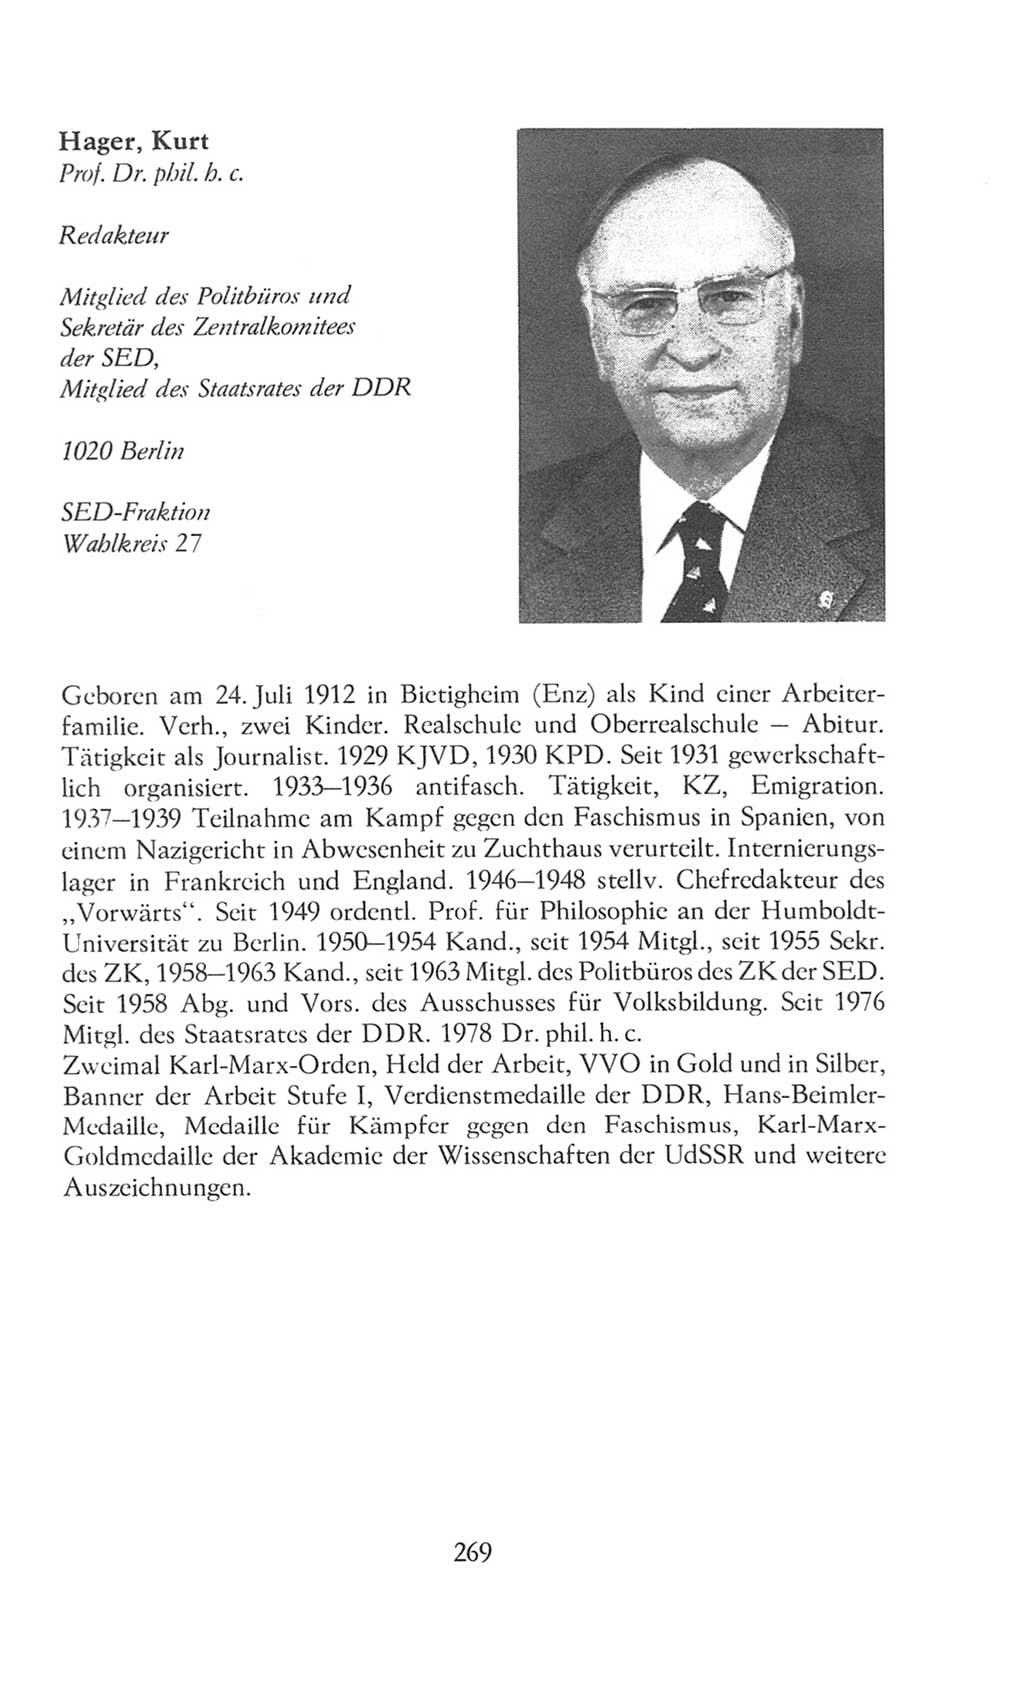 Volkskammer (VK) der Deutschen Demokratischen Republik (DDR), 8. Wahlperiode 1981-1986, Seite 269 (VK. DDR 8. WP. 1981-1986, S. 269)